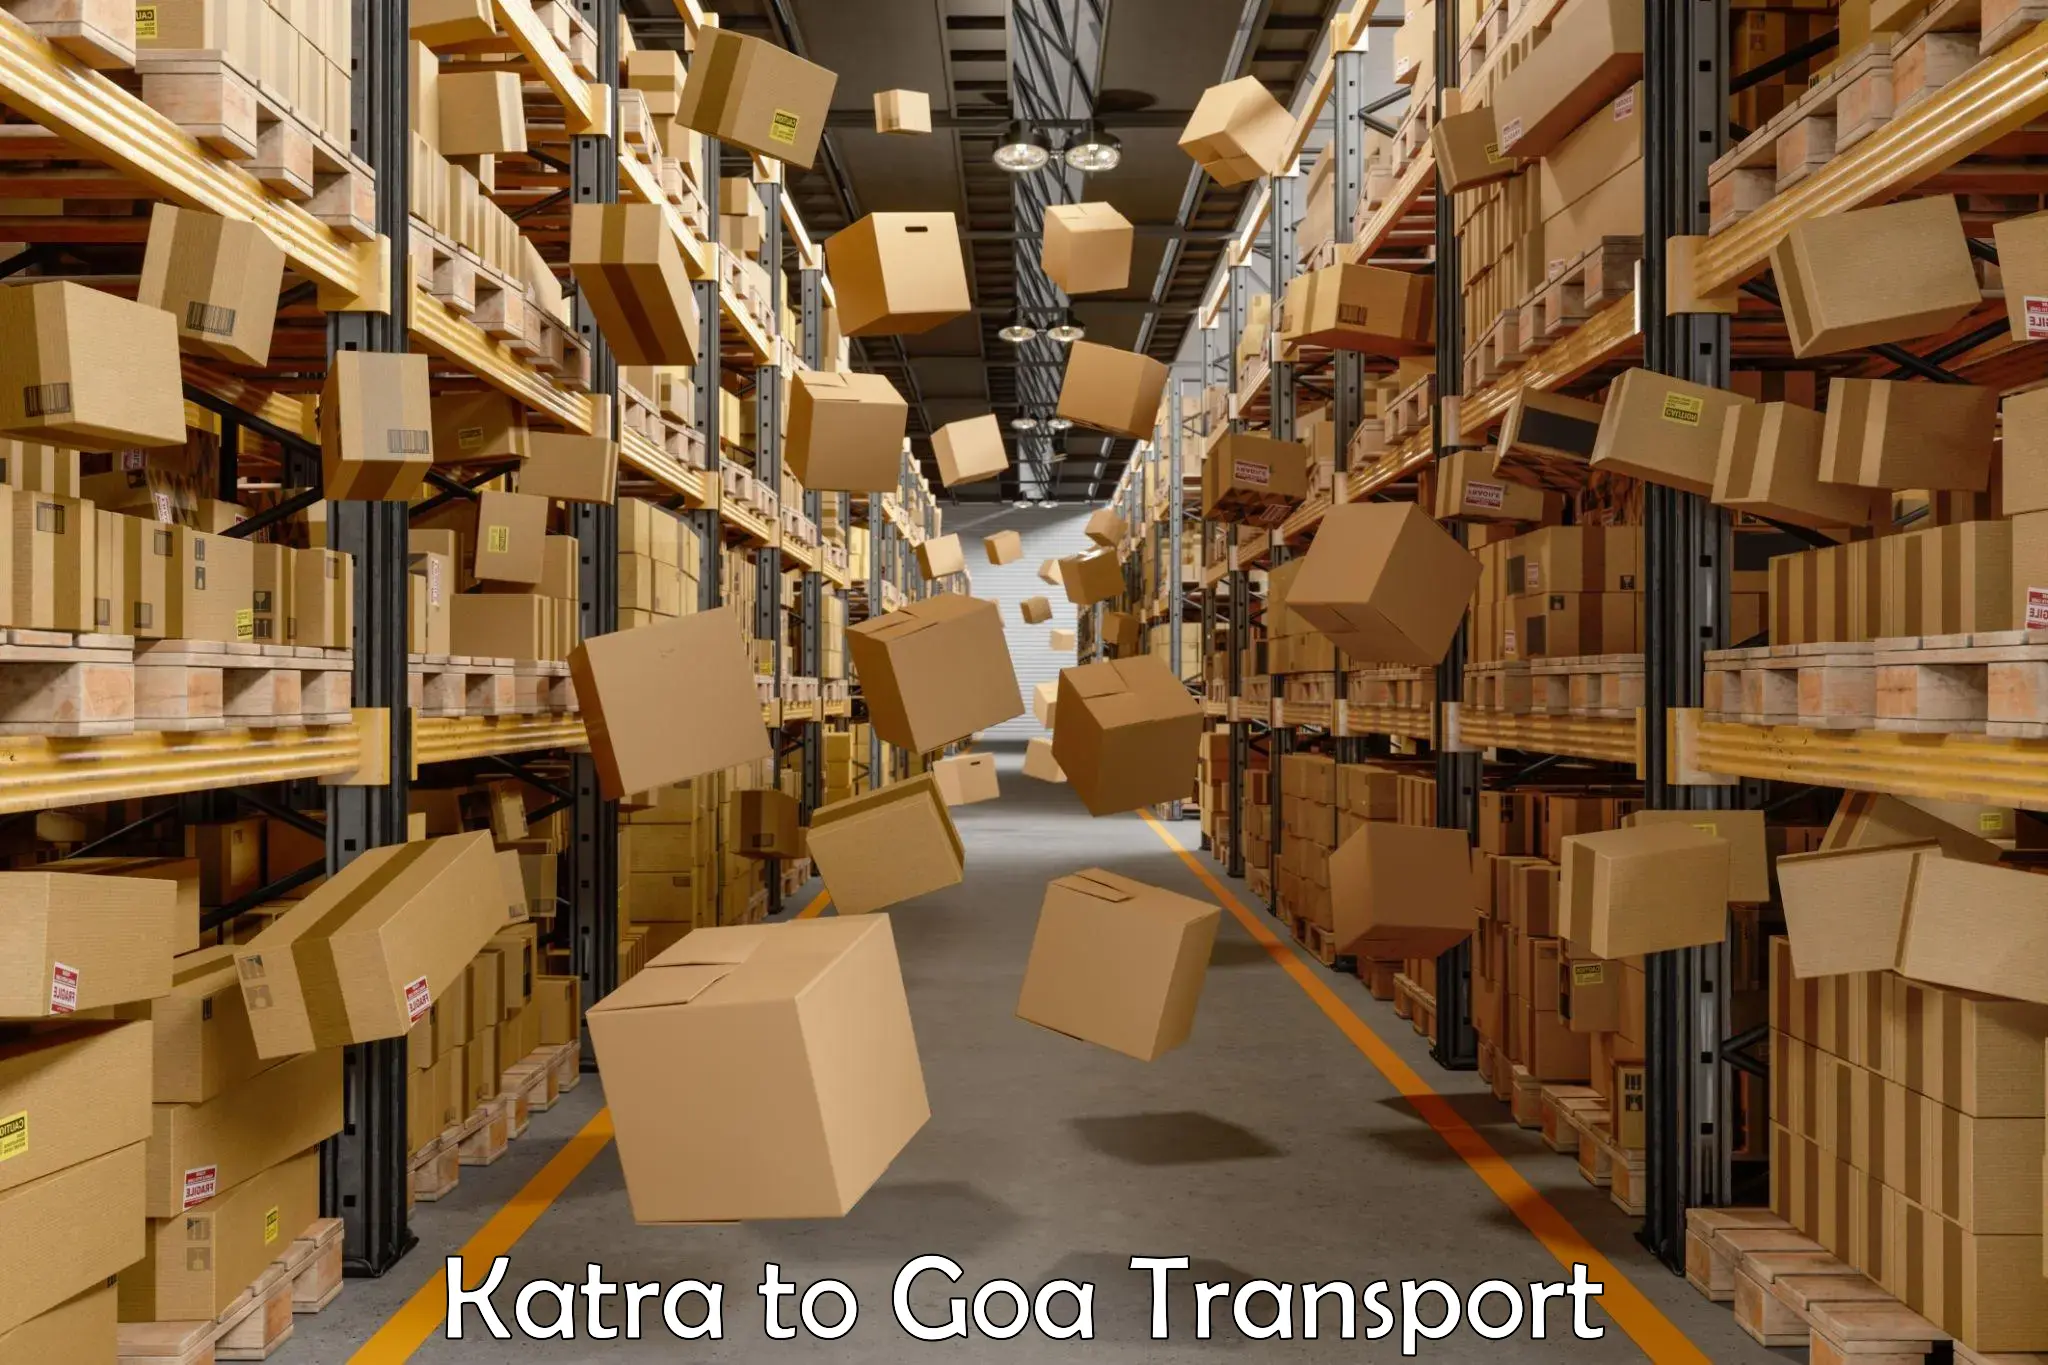 Daily parcel service transport Katra to Mormugao Port